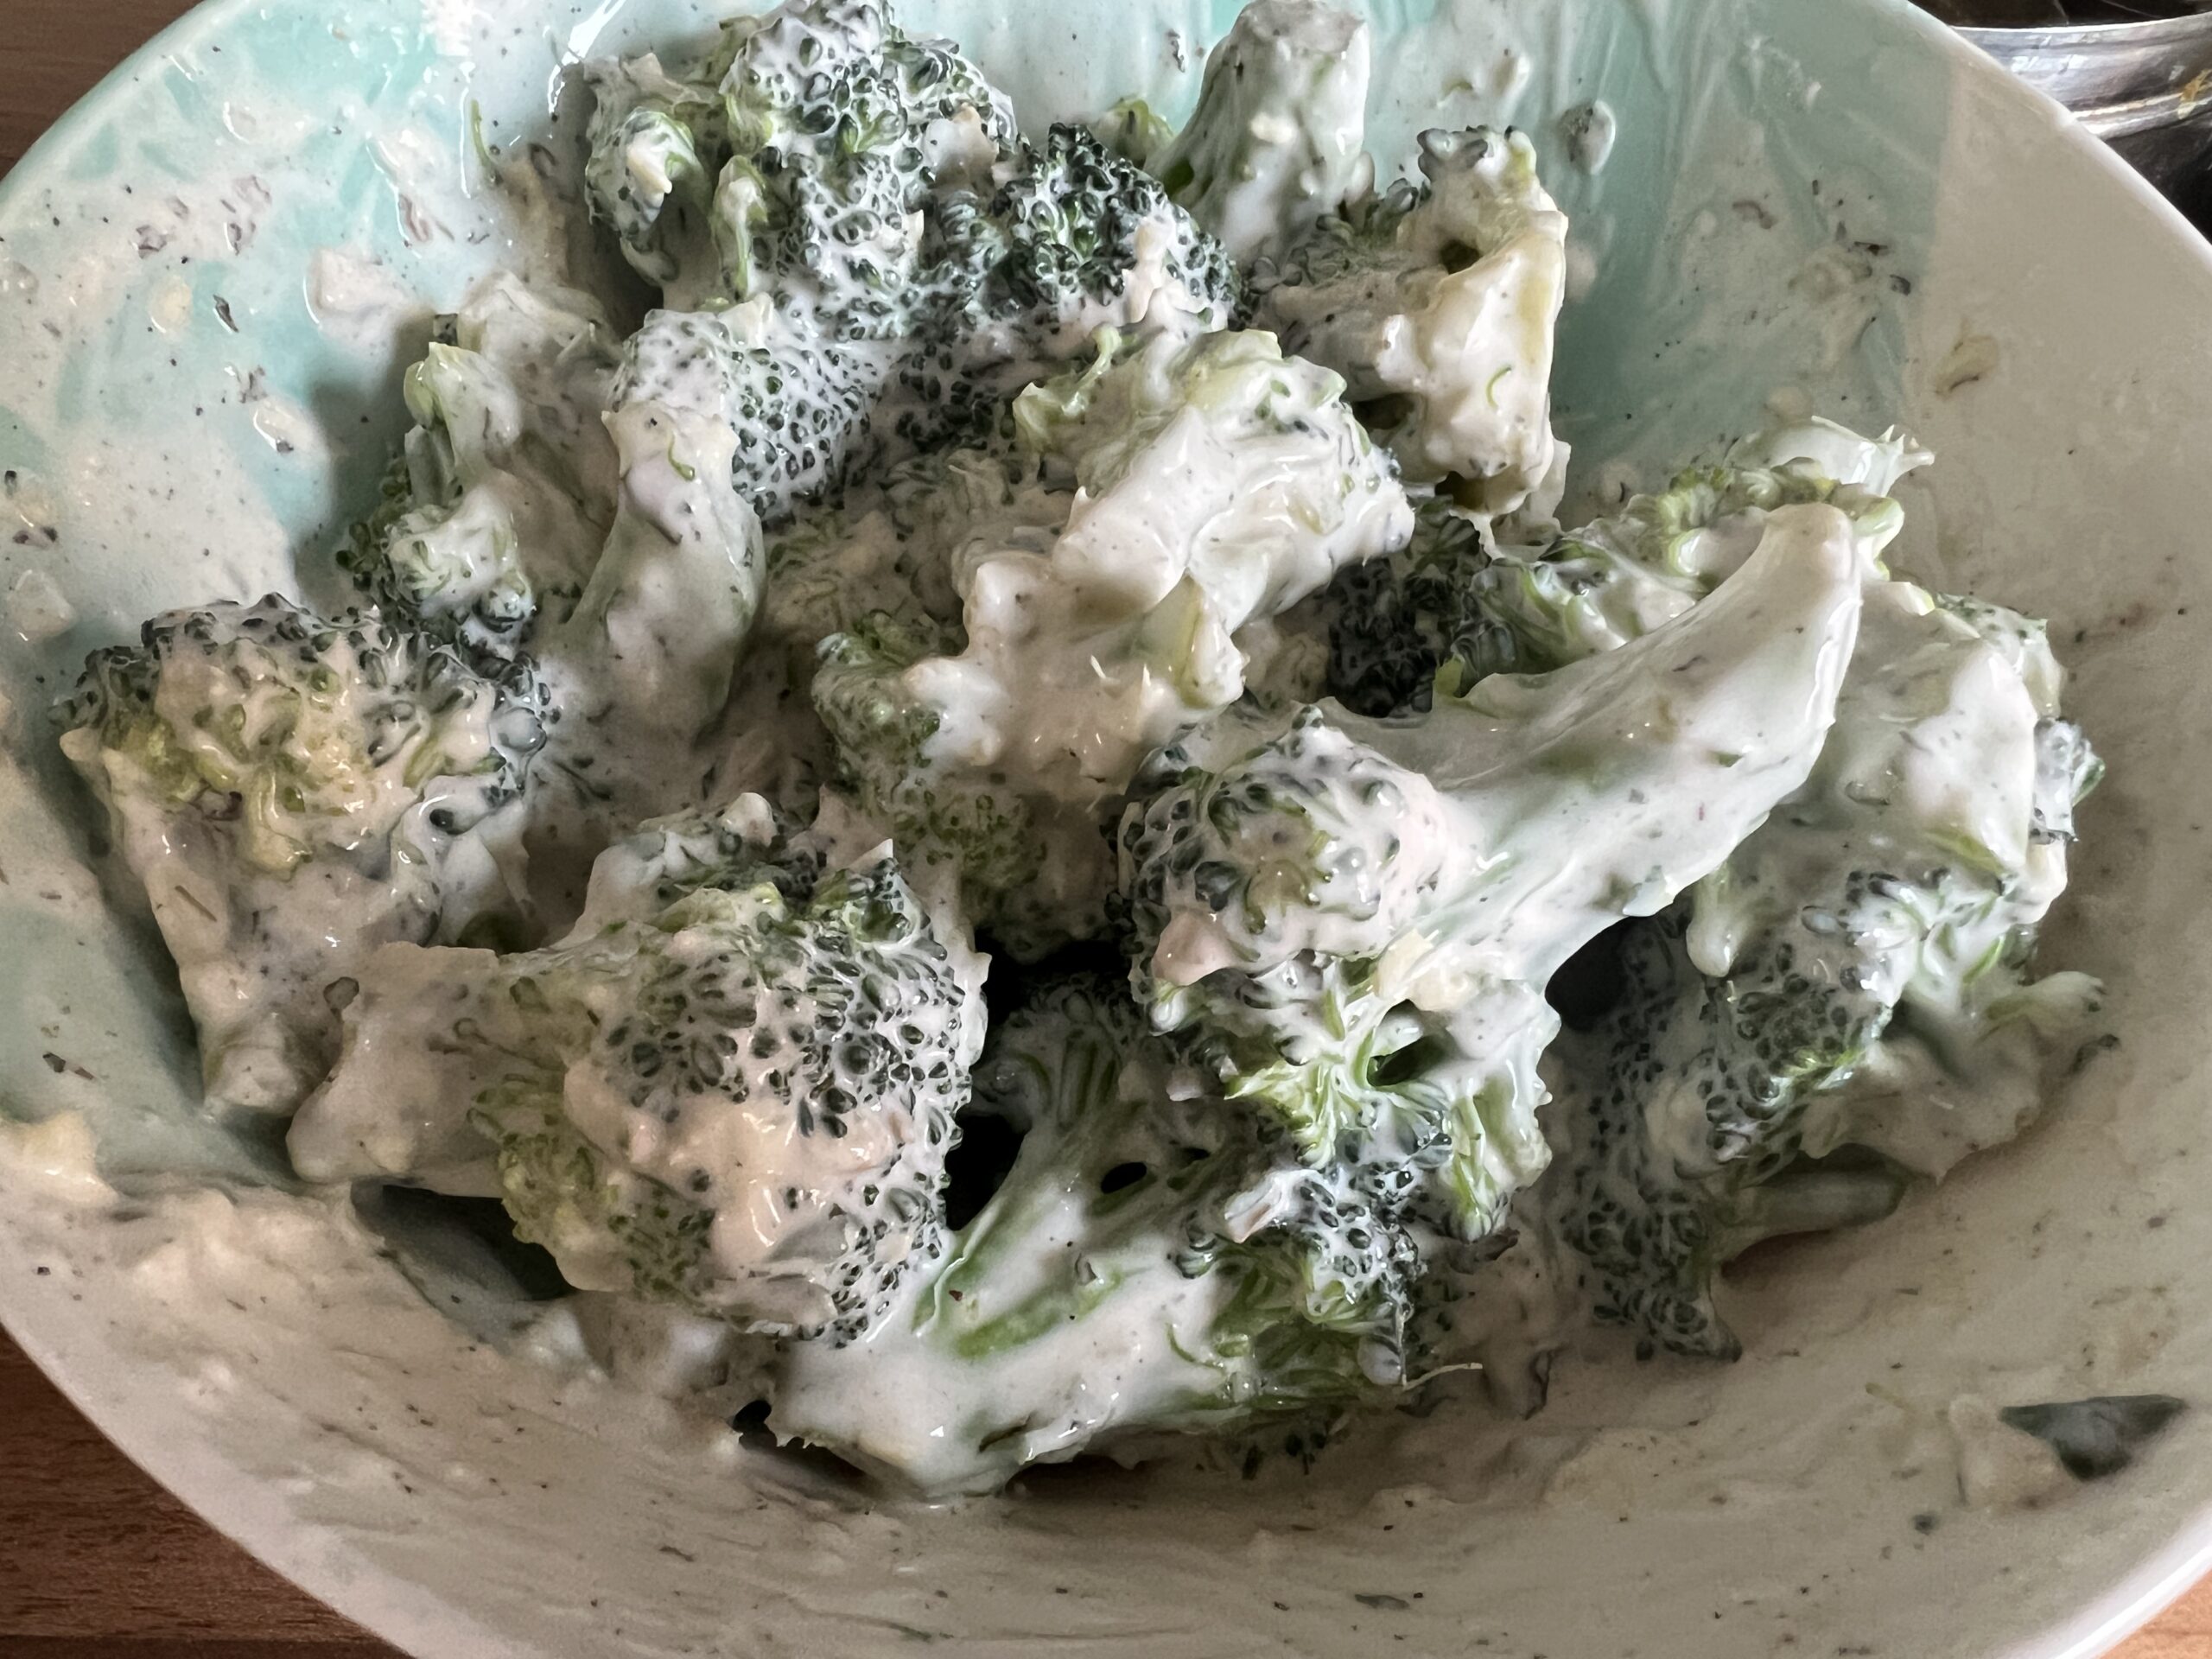 Malai Broccoli Recipe